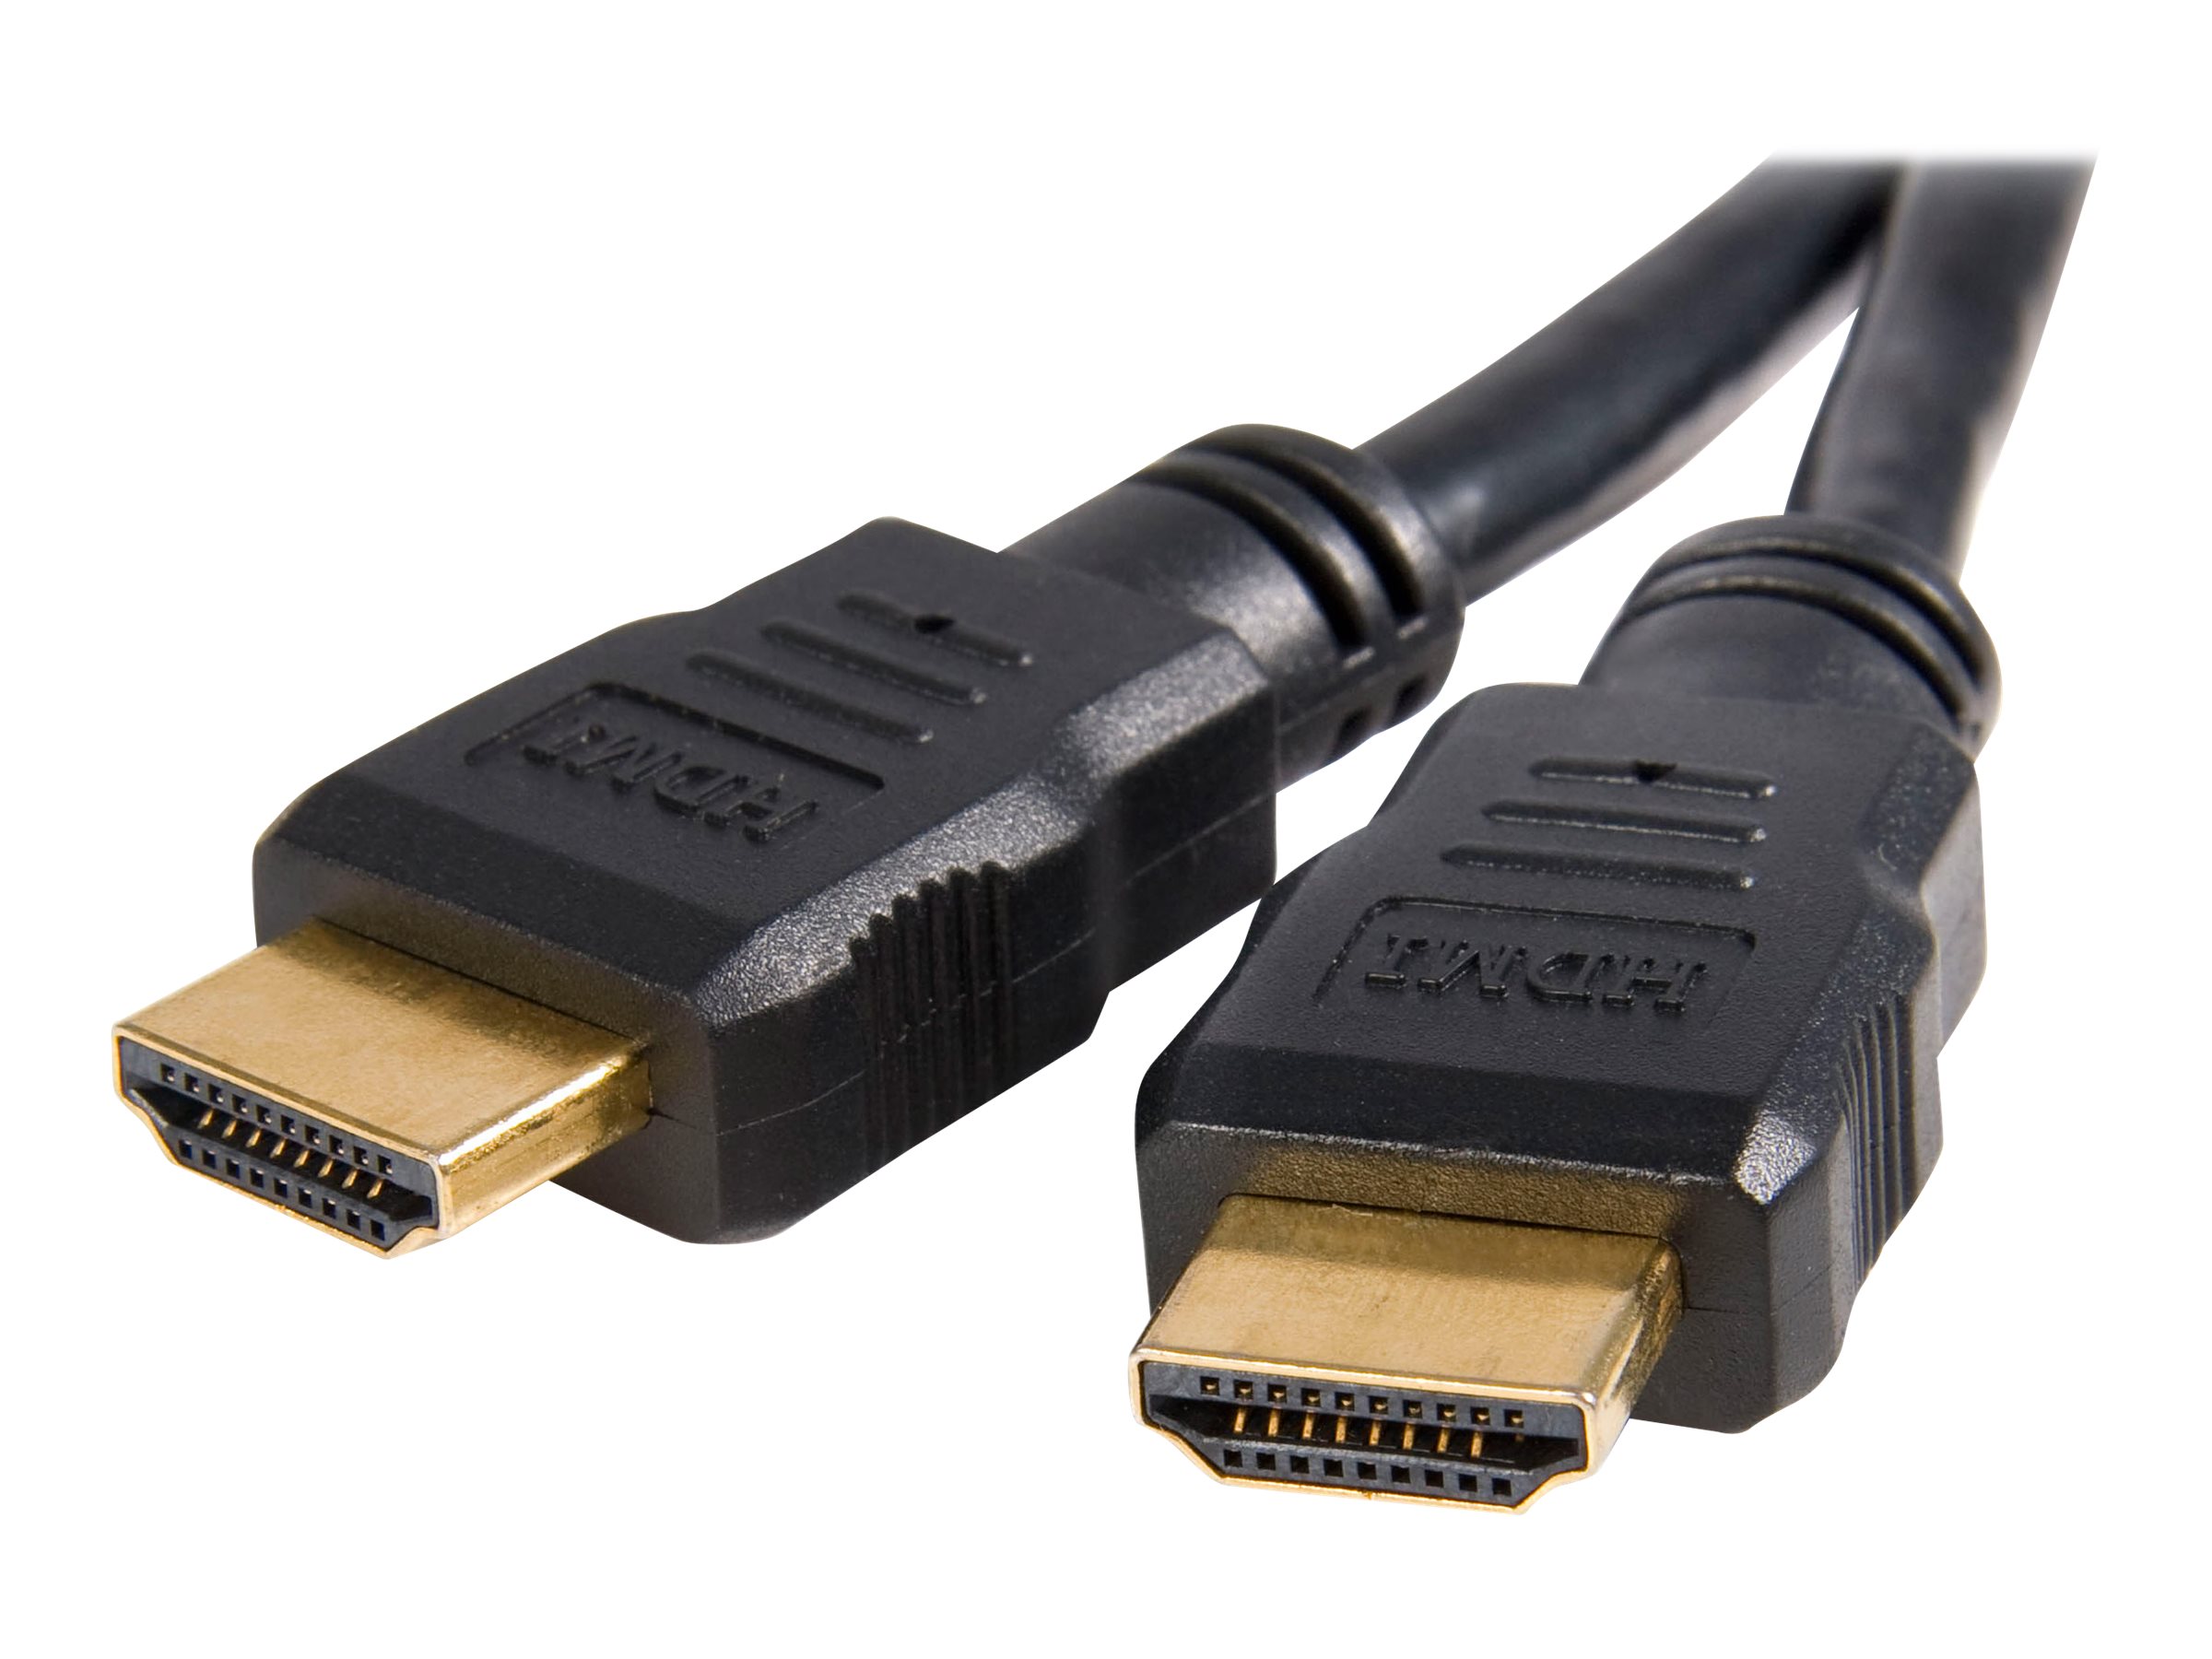 StarTech.com Cable de 15 metros HDMI 2.0 - Cable HDMI Activo de 4K a 60Hz -  con Clasificacioón CL2 para Instalación en Pared - Cable HDMI de Alta  Velocidad Largo y Durable 